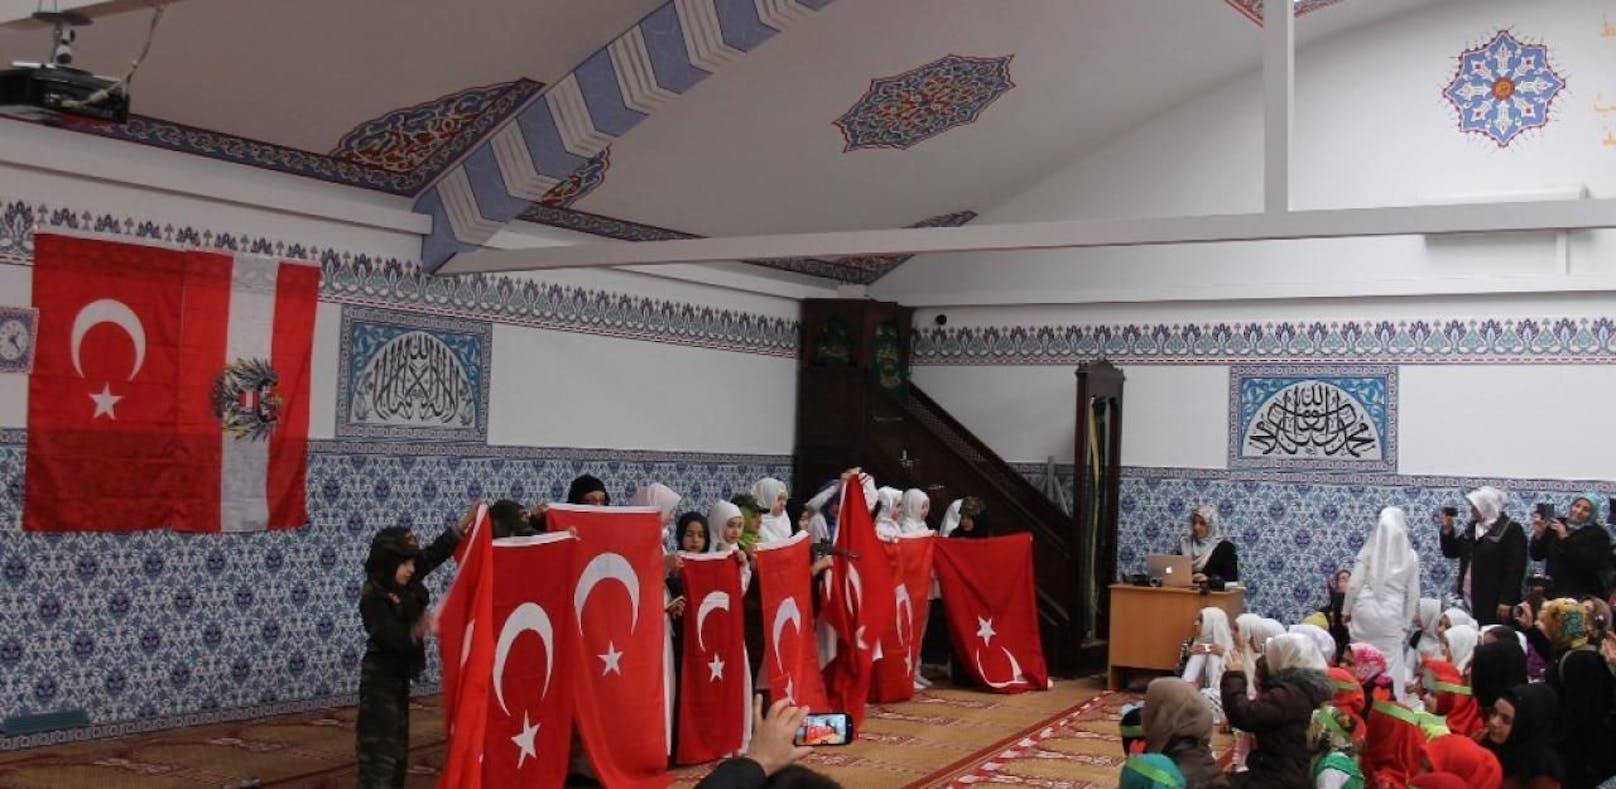 Vorfälle wie die militaristischen Inszenierungen in einer Wiener Atib-Moschee sollen nun von einer eigenen Beobachtungsstelle dokumentiert werden.